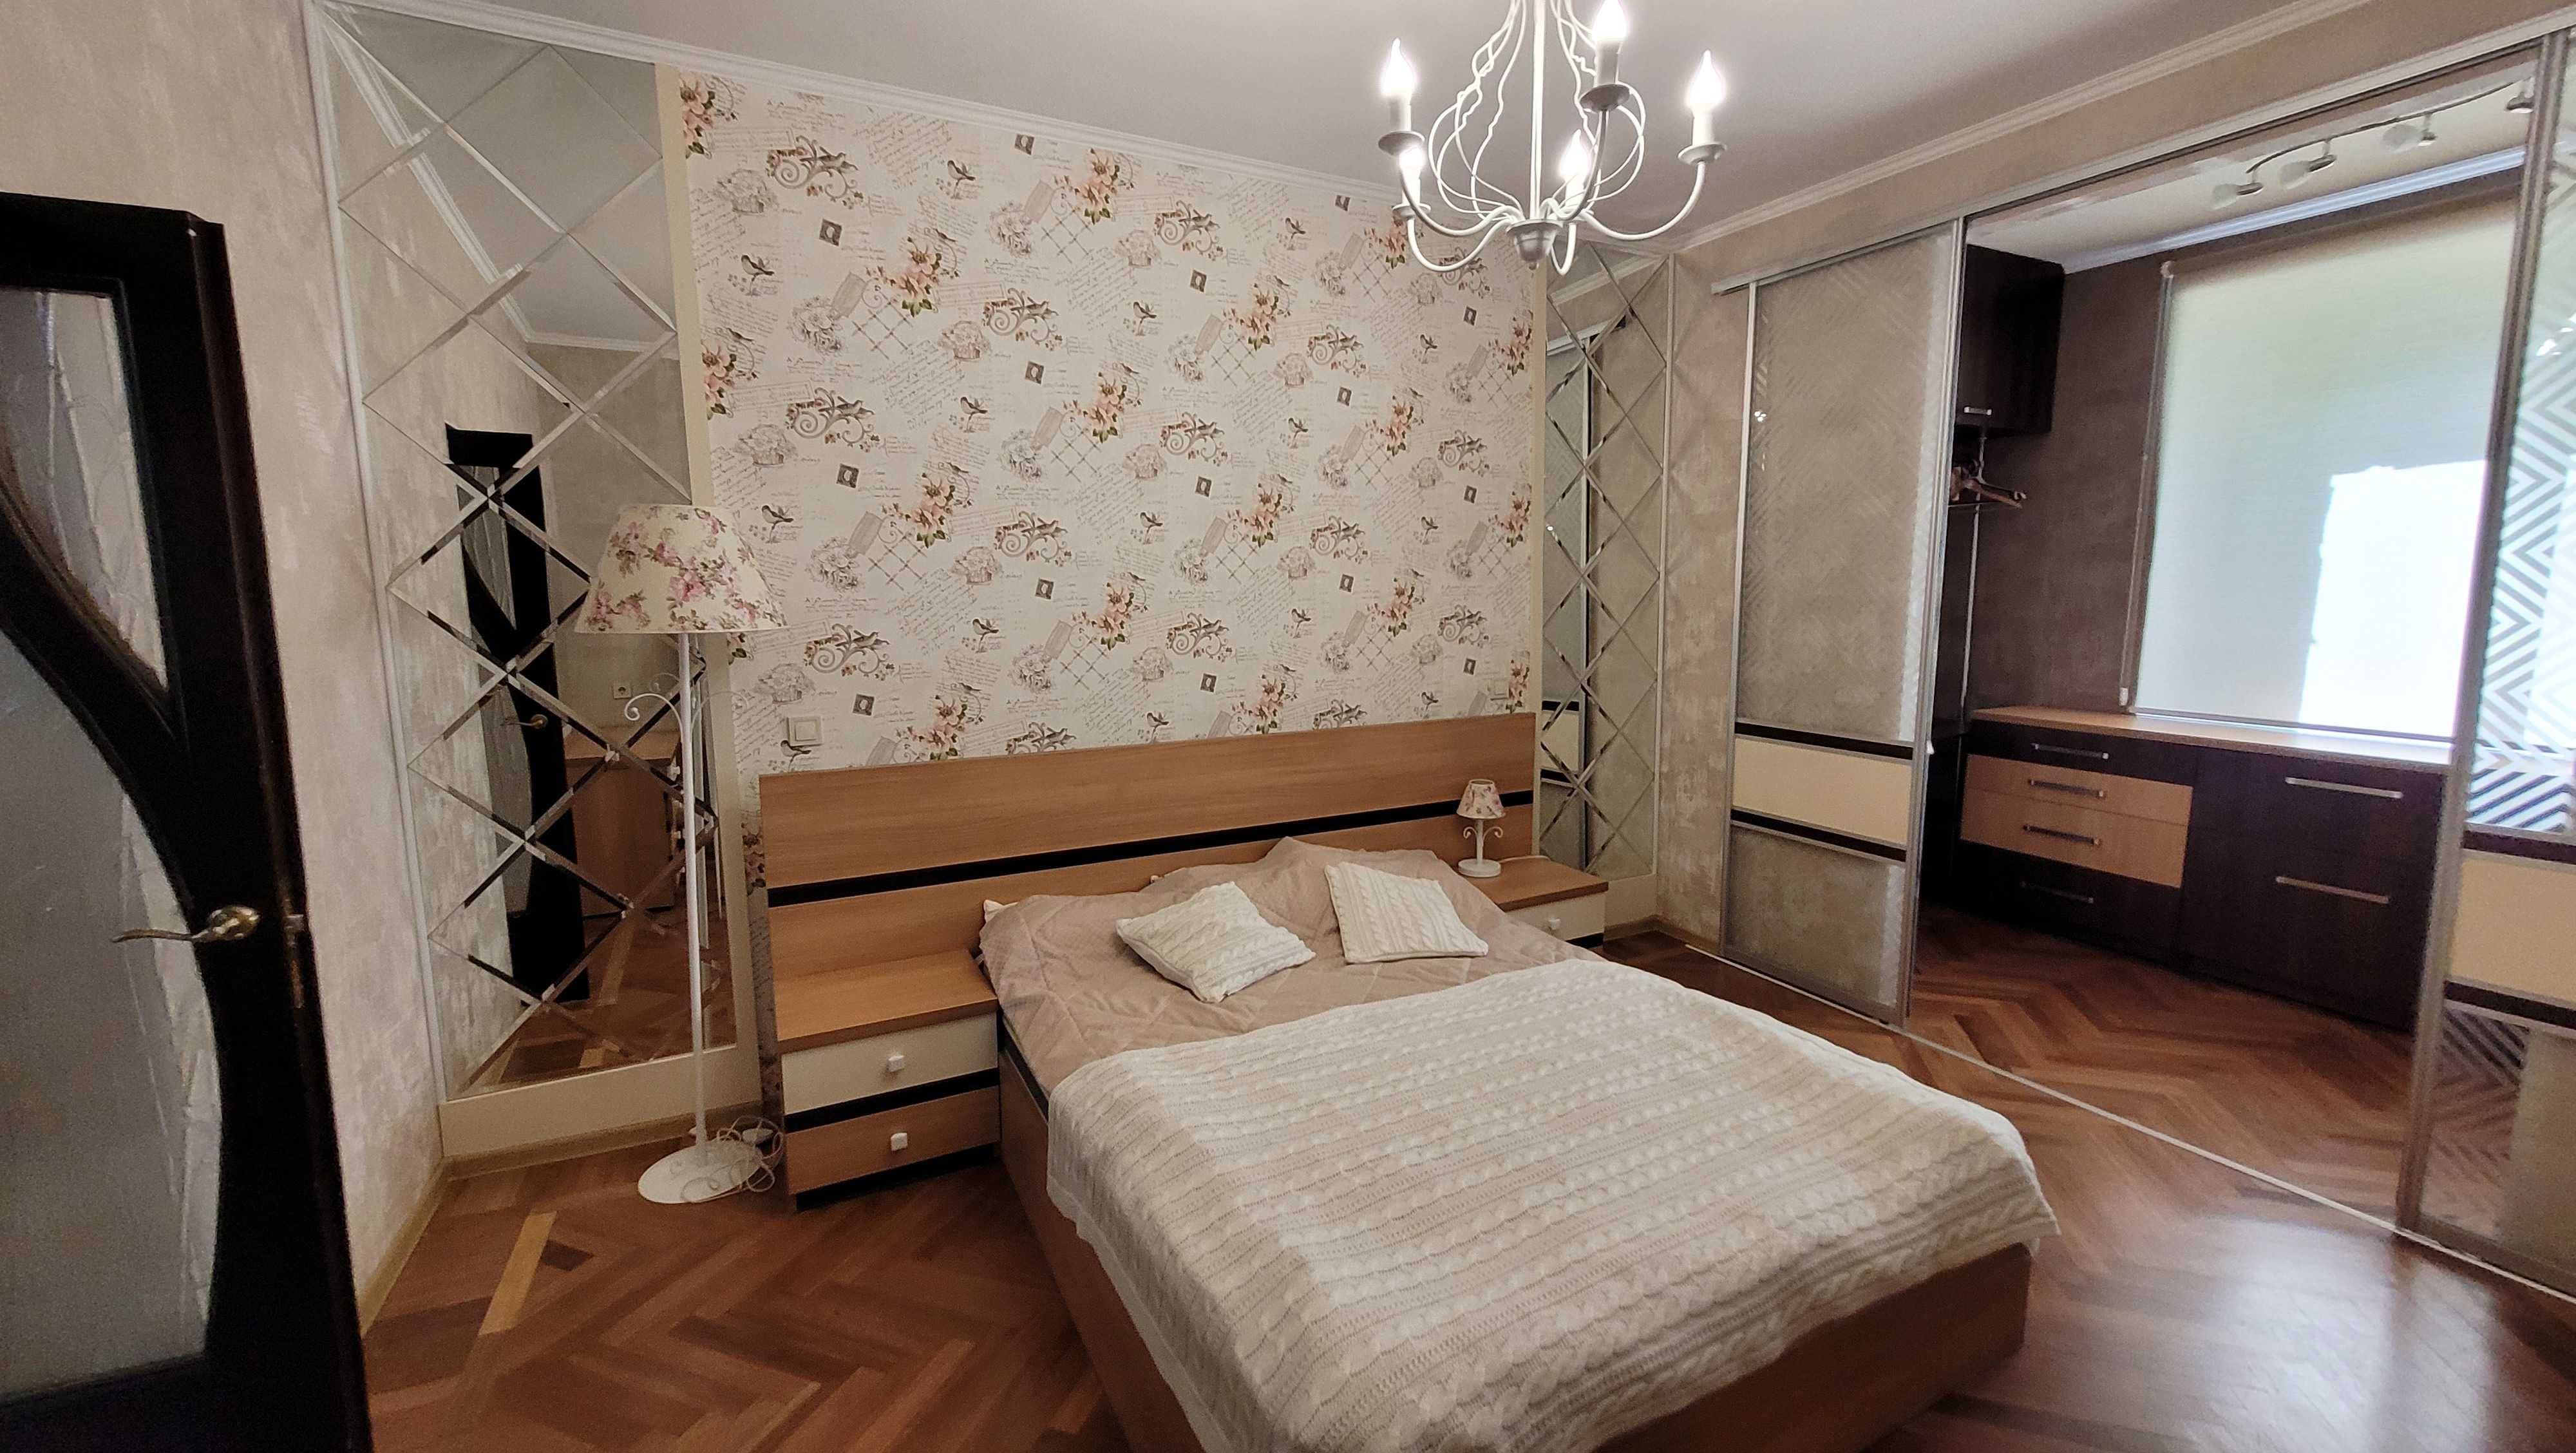 Сдам 4 комнатную квартиру 2/4 проспект Героев Украины 28